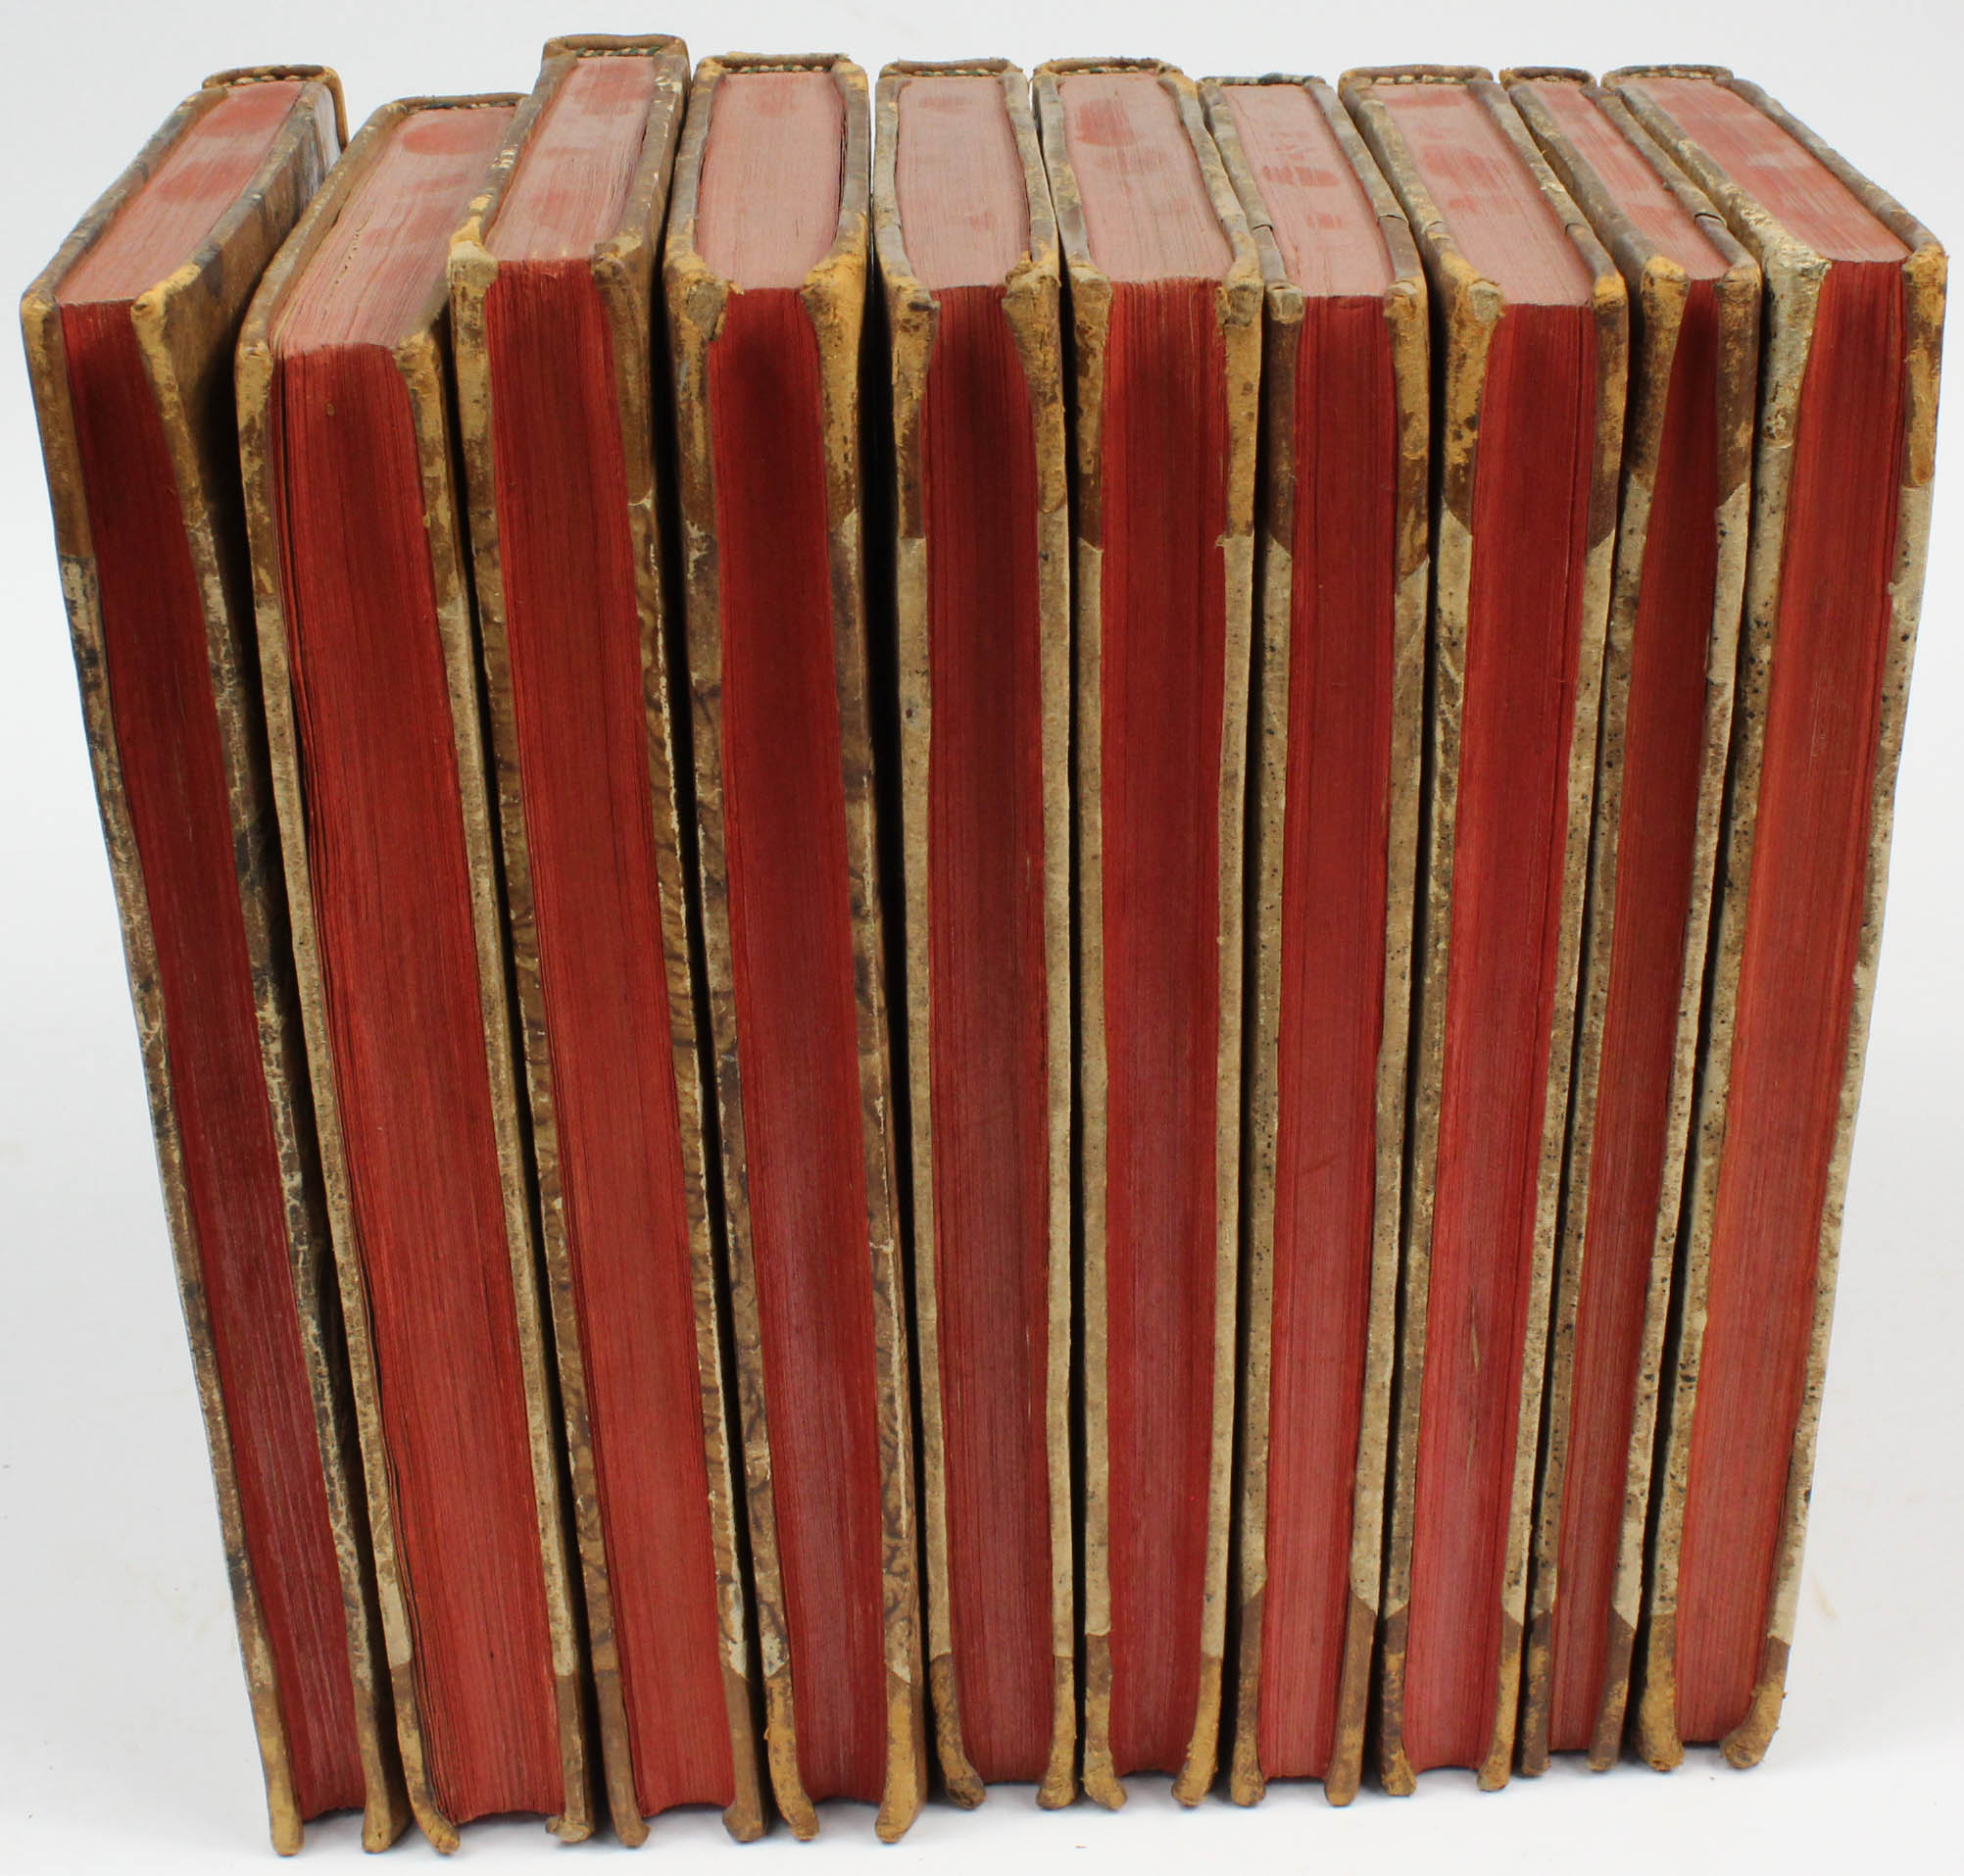 Neues Forstarchiv. 10 Bände von 12. 1796-1805. - Bild 4 aus 6